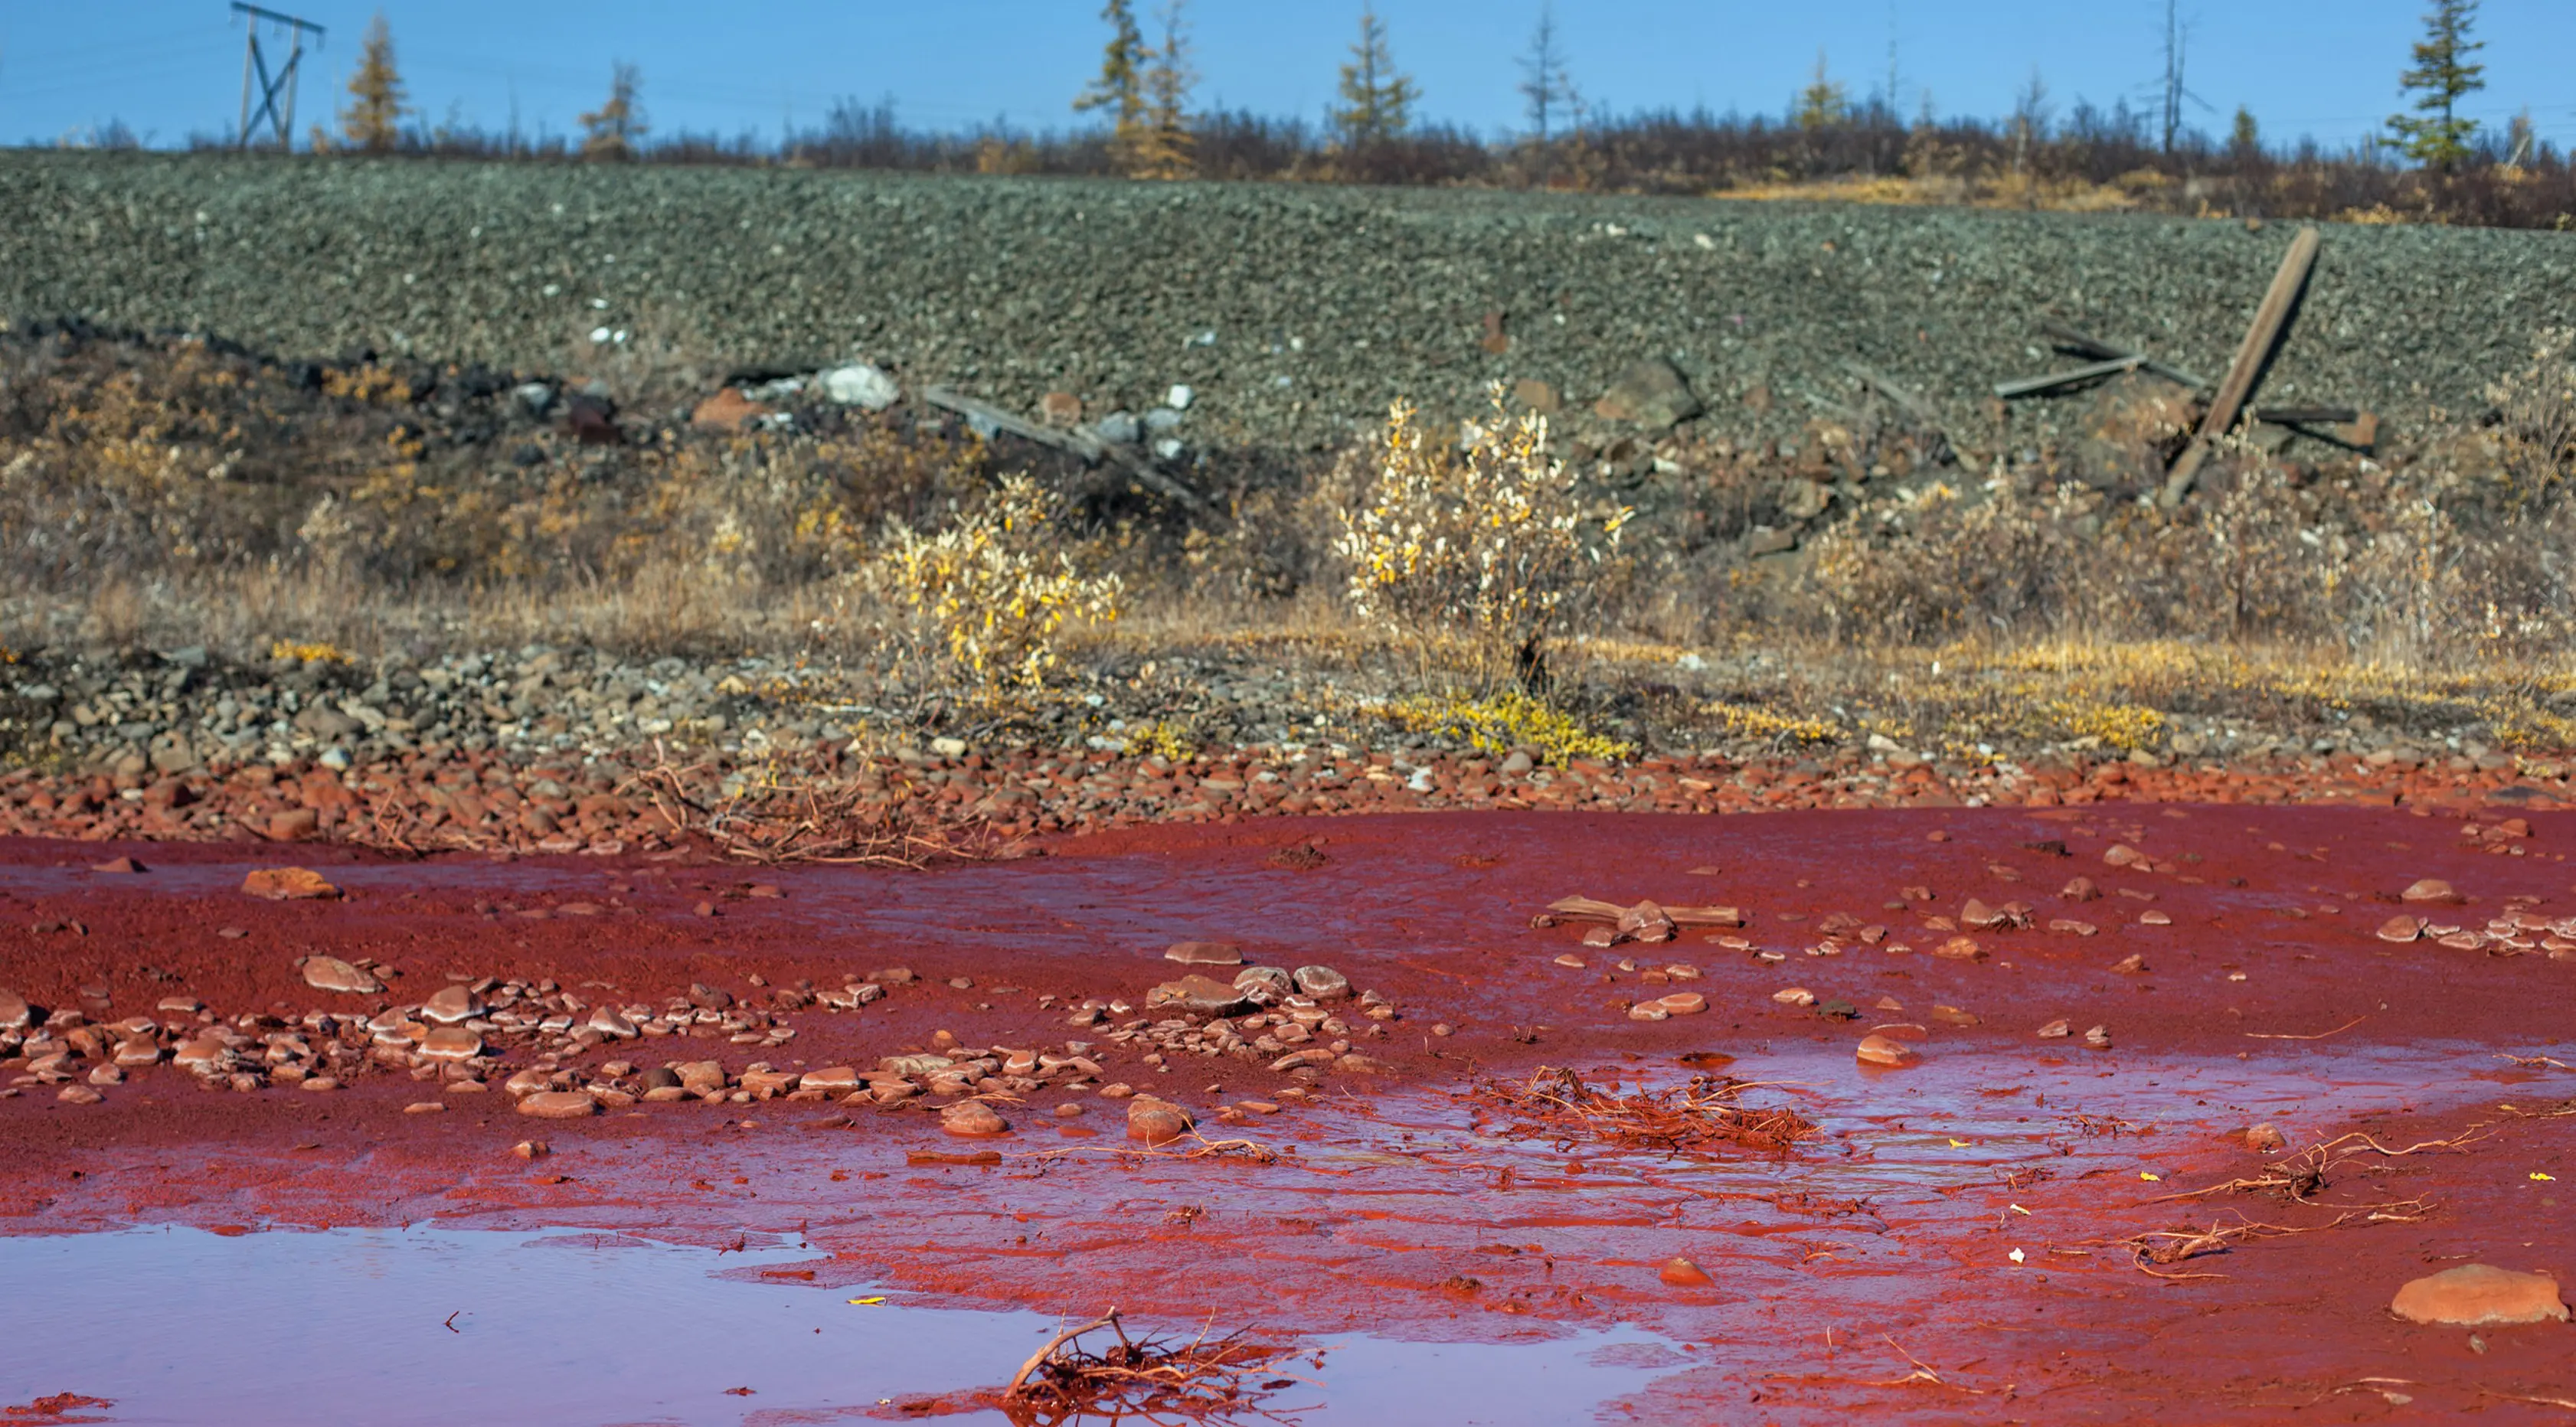 Genangan air di sekitar tepi sungai Daldykan berwarna merah darah akibat tercemar di Krasnoyarsk, Rusia, 8 September 2016. Sungai itu berubah menjadi merah karena tumpahan nikel yang hanyut dari pabrik nikel terbesar di dunia, Norilsk Nickel (AFP PHOTO)